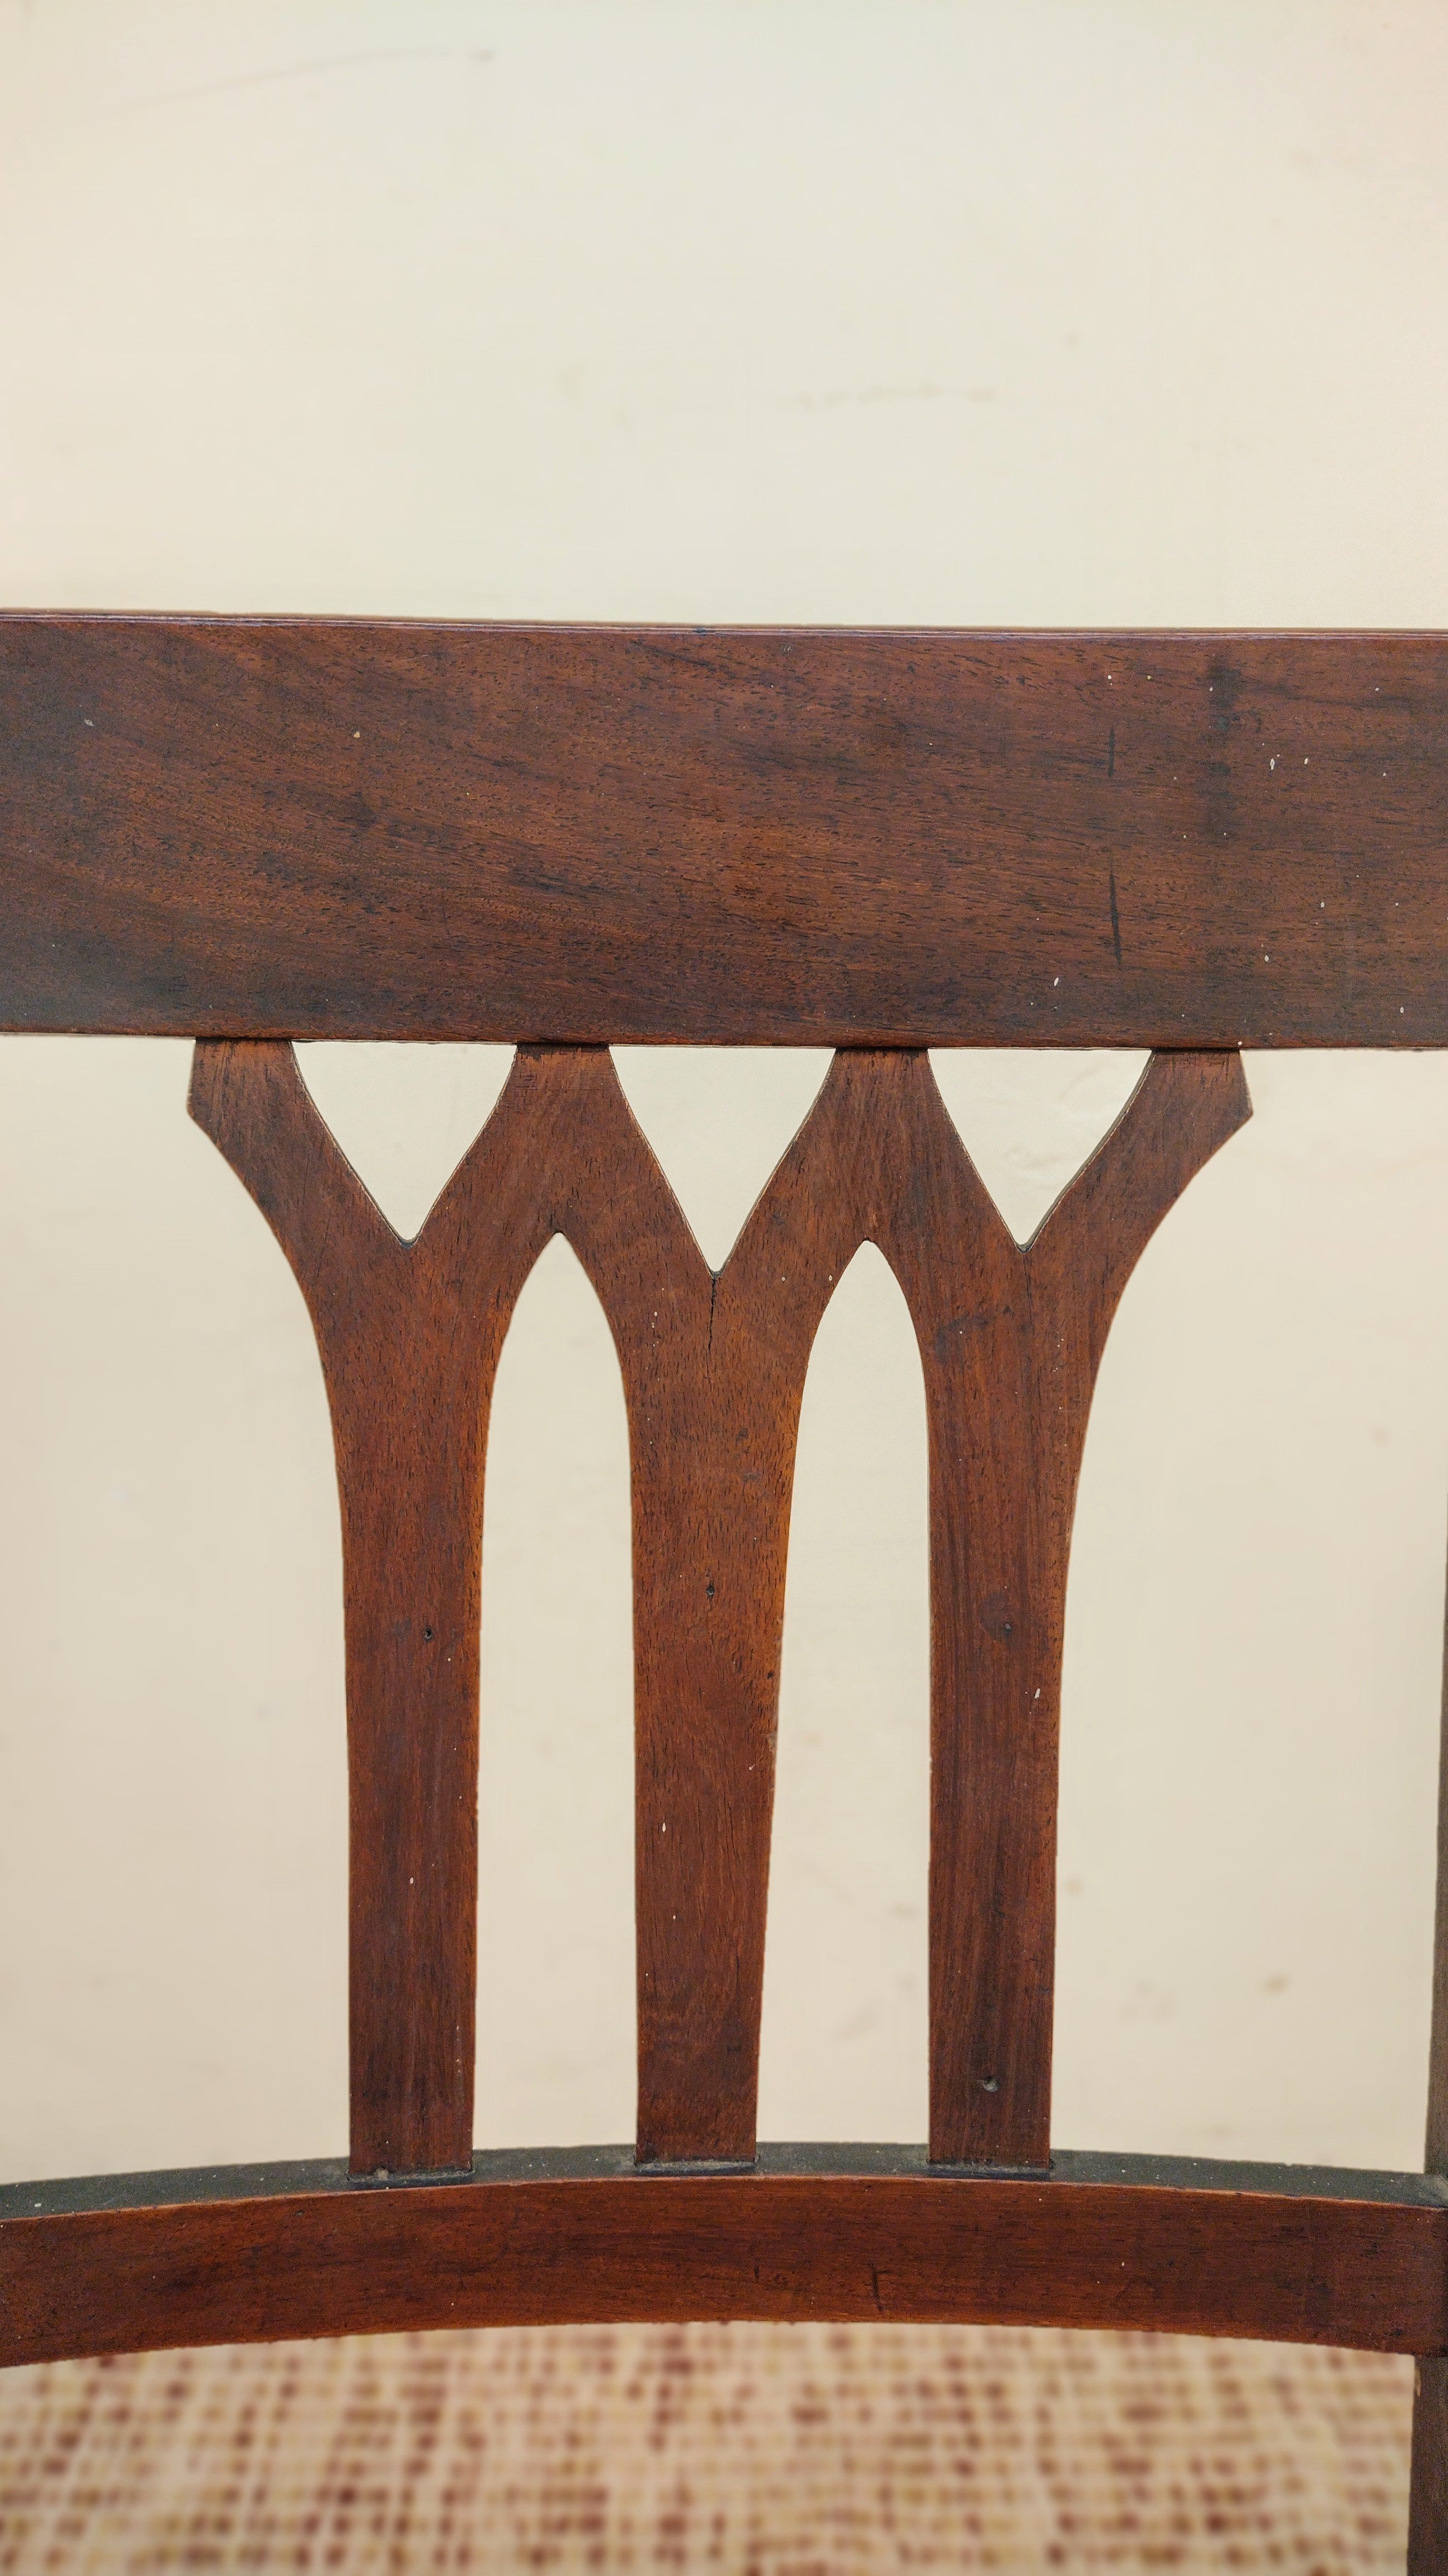 Par de cadeiras anos 50 em madeira maciça e estofado vermelho